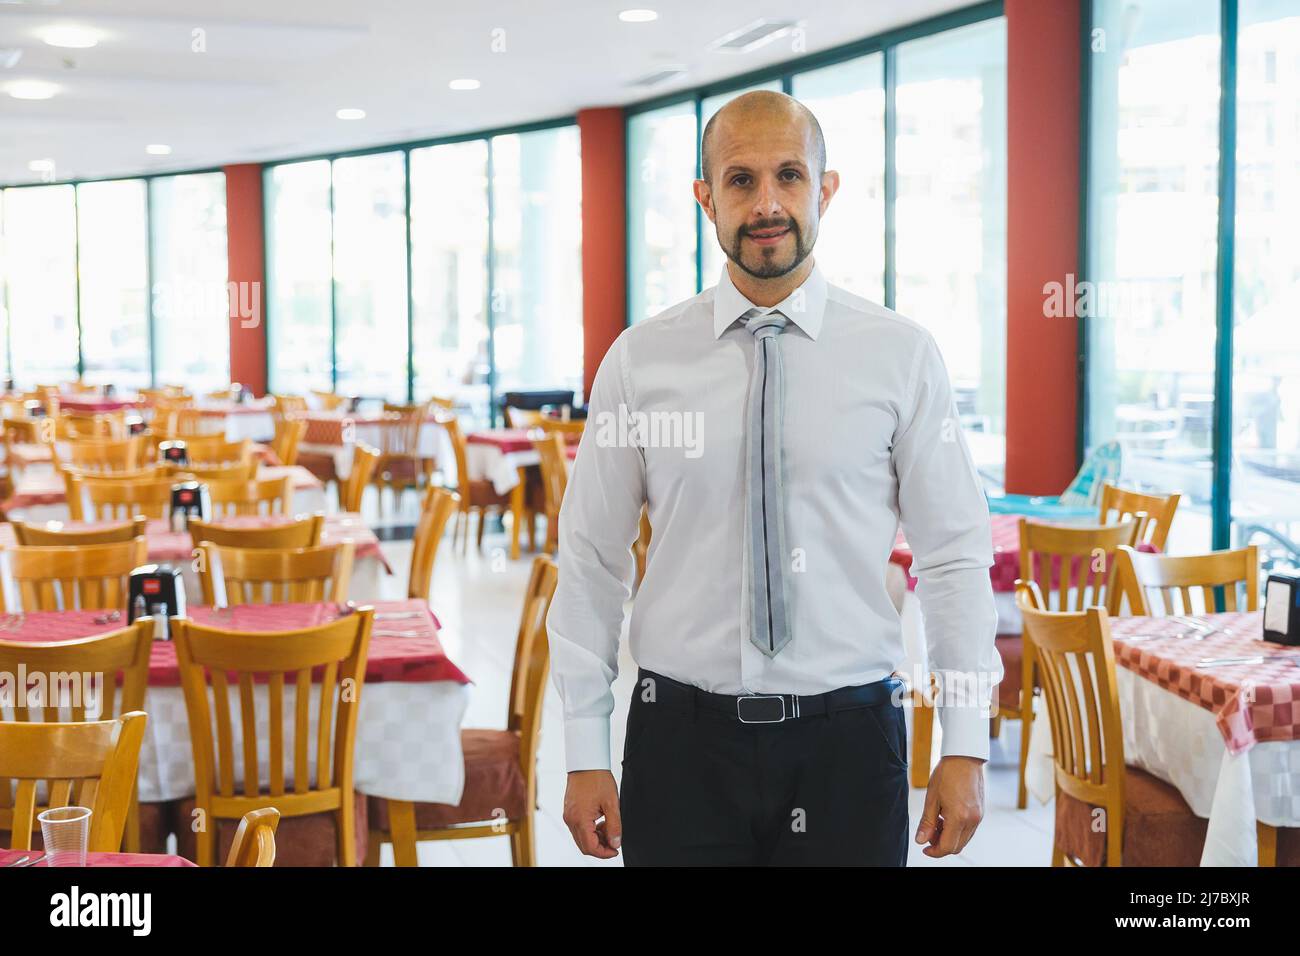 NESSEBAR, BULGARIEN - 26. August 2017: Junger, gutaussehender Verwalter, der im Restaurant des Hotels steht und Besucher trifft Stockfoto